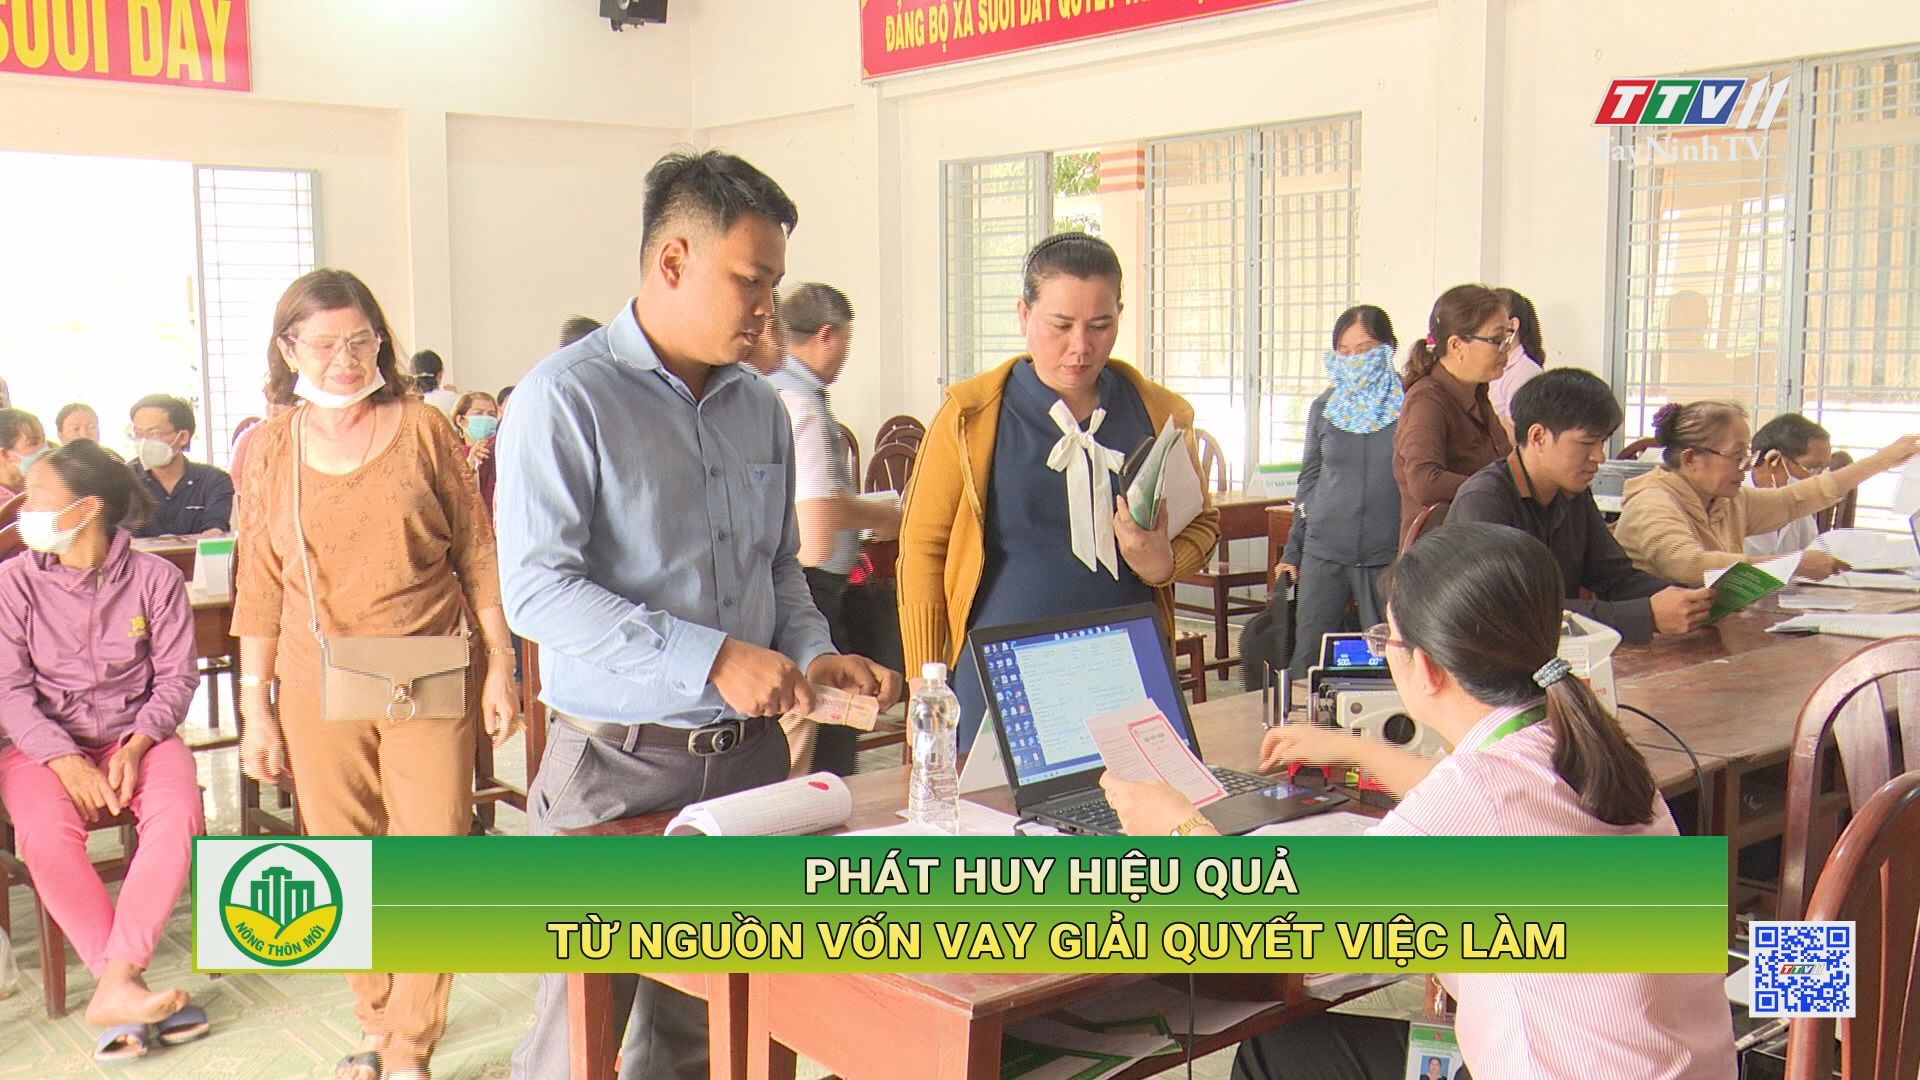 Phát huy hiệu quả từ nguồn vốn vay giải quyết việc làm | Tây Ninh xây dựng nông thôn mới | TayNinhTV